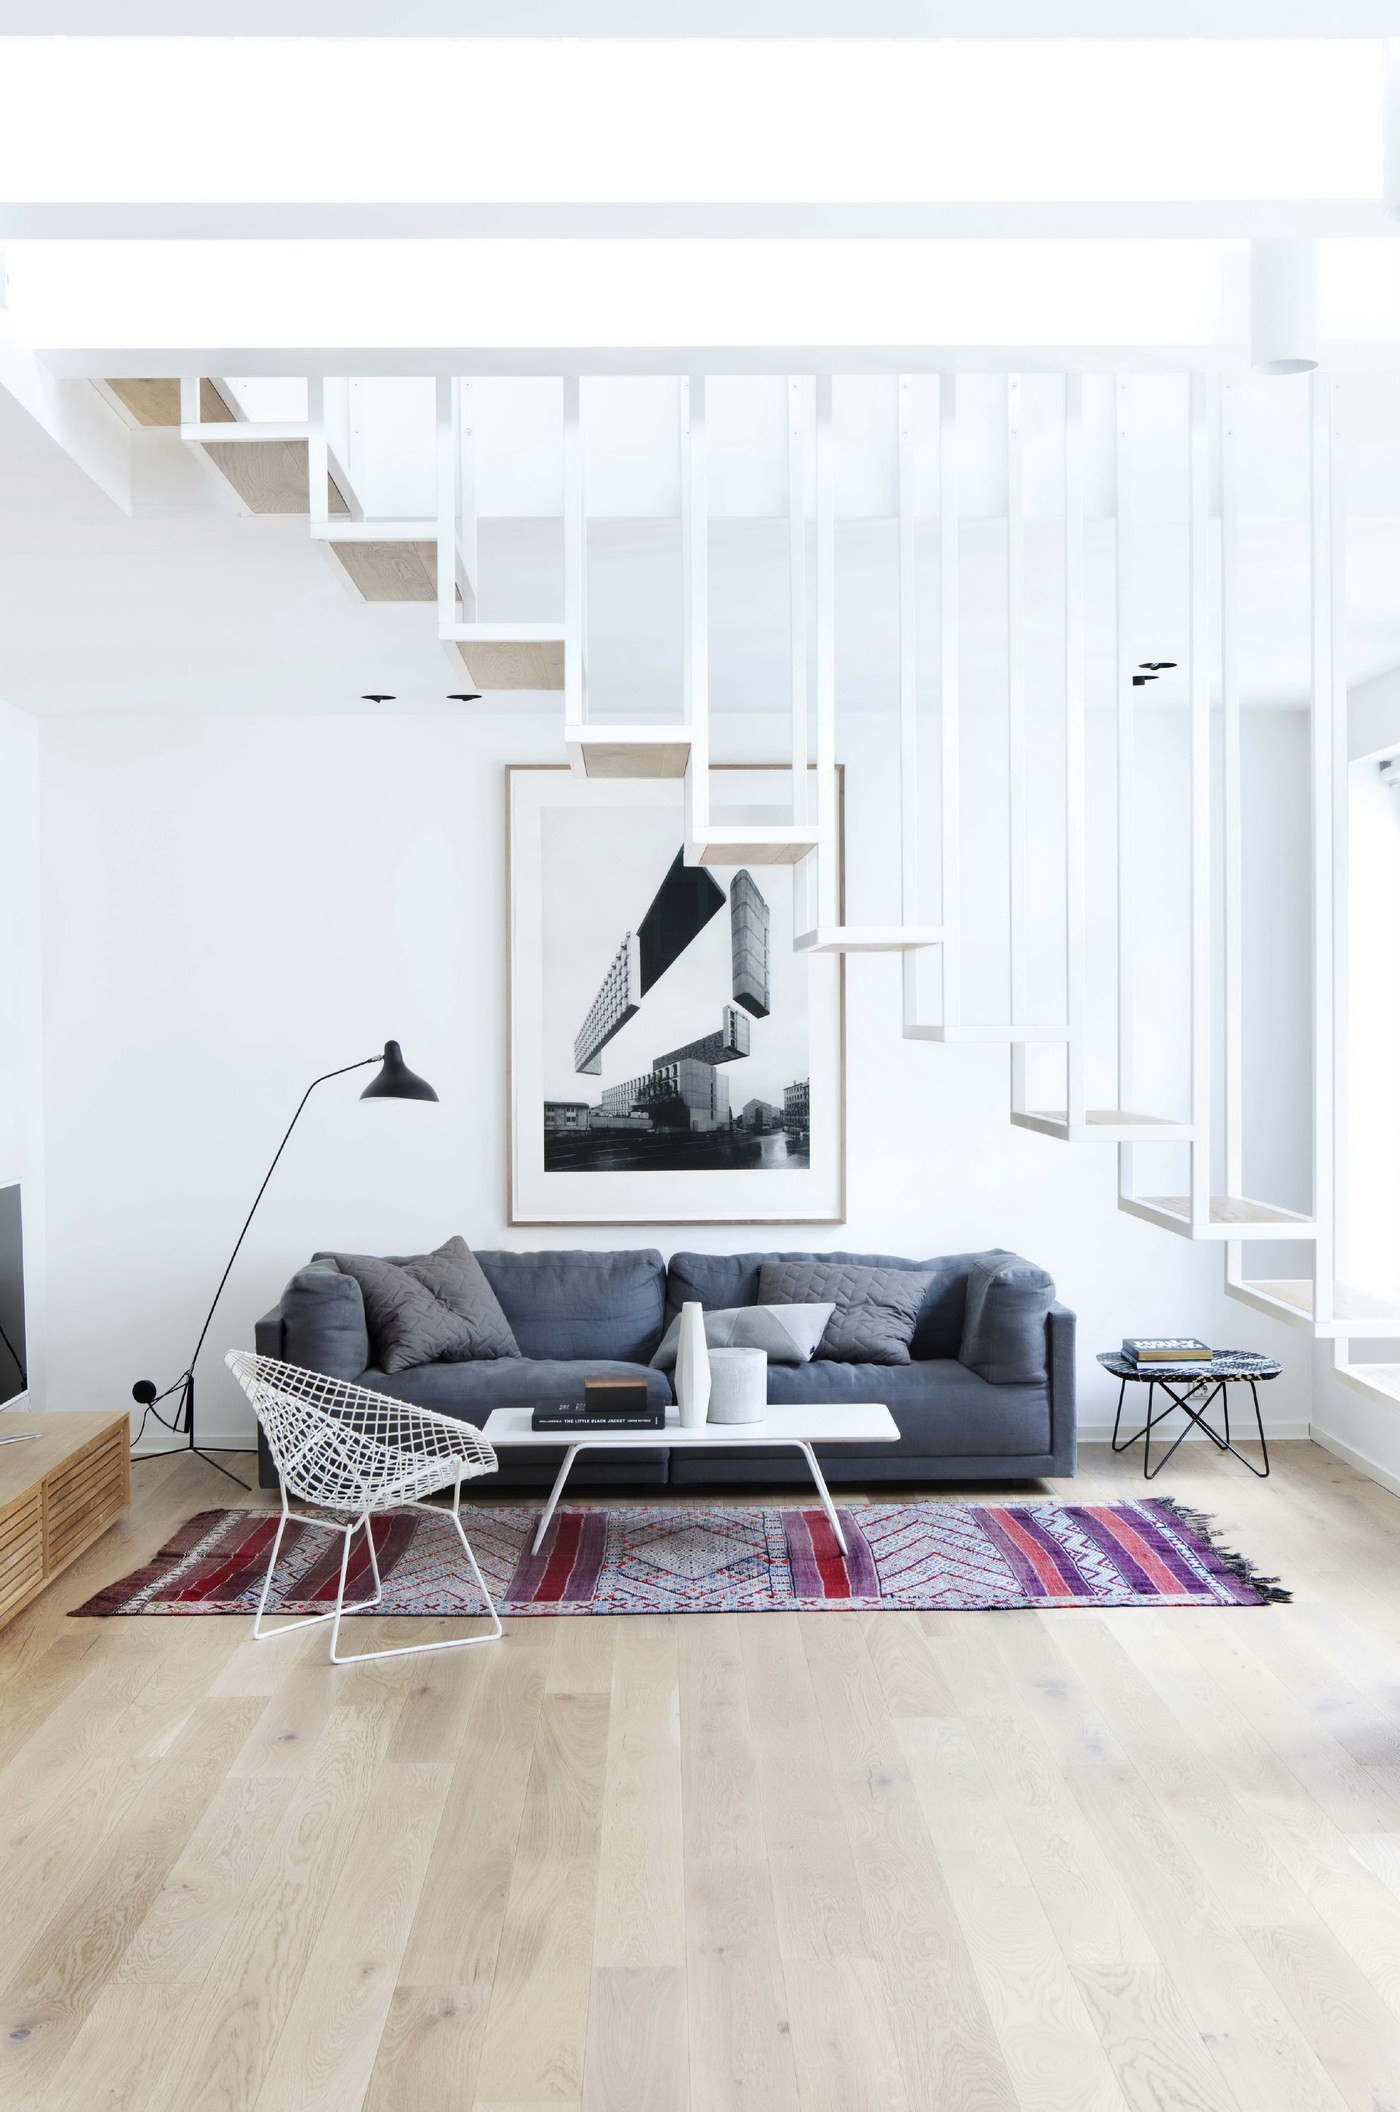 Décor do dia: escada suspensa na sala de estar (Foto: Marcelo Donadussi)